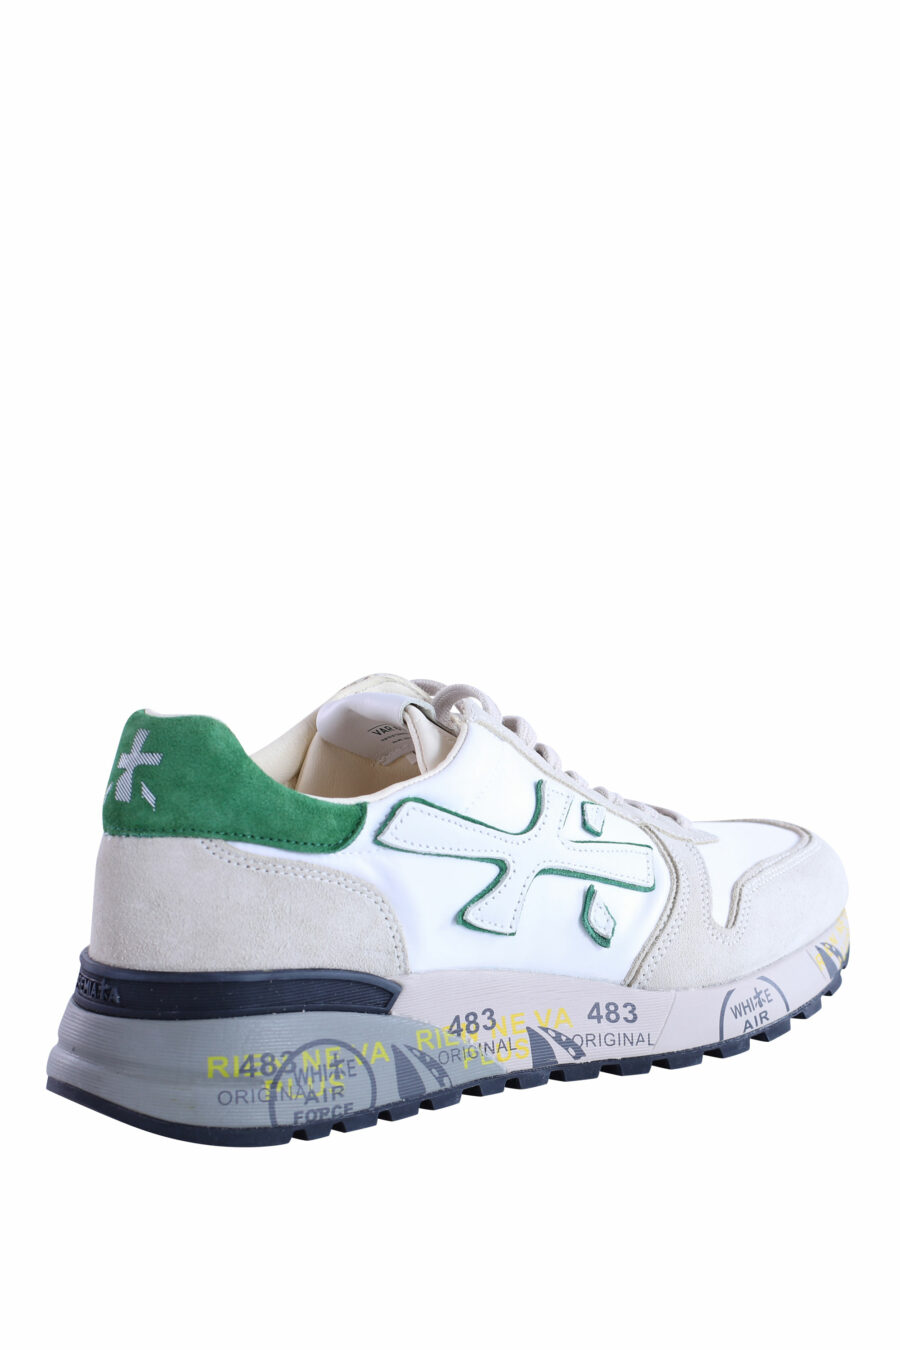 Zapatillas beige con blanco y verde "mick 6167" - IMG 2937